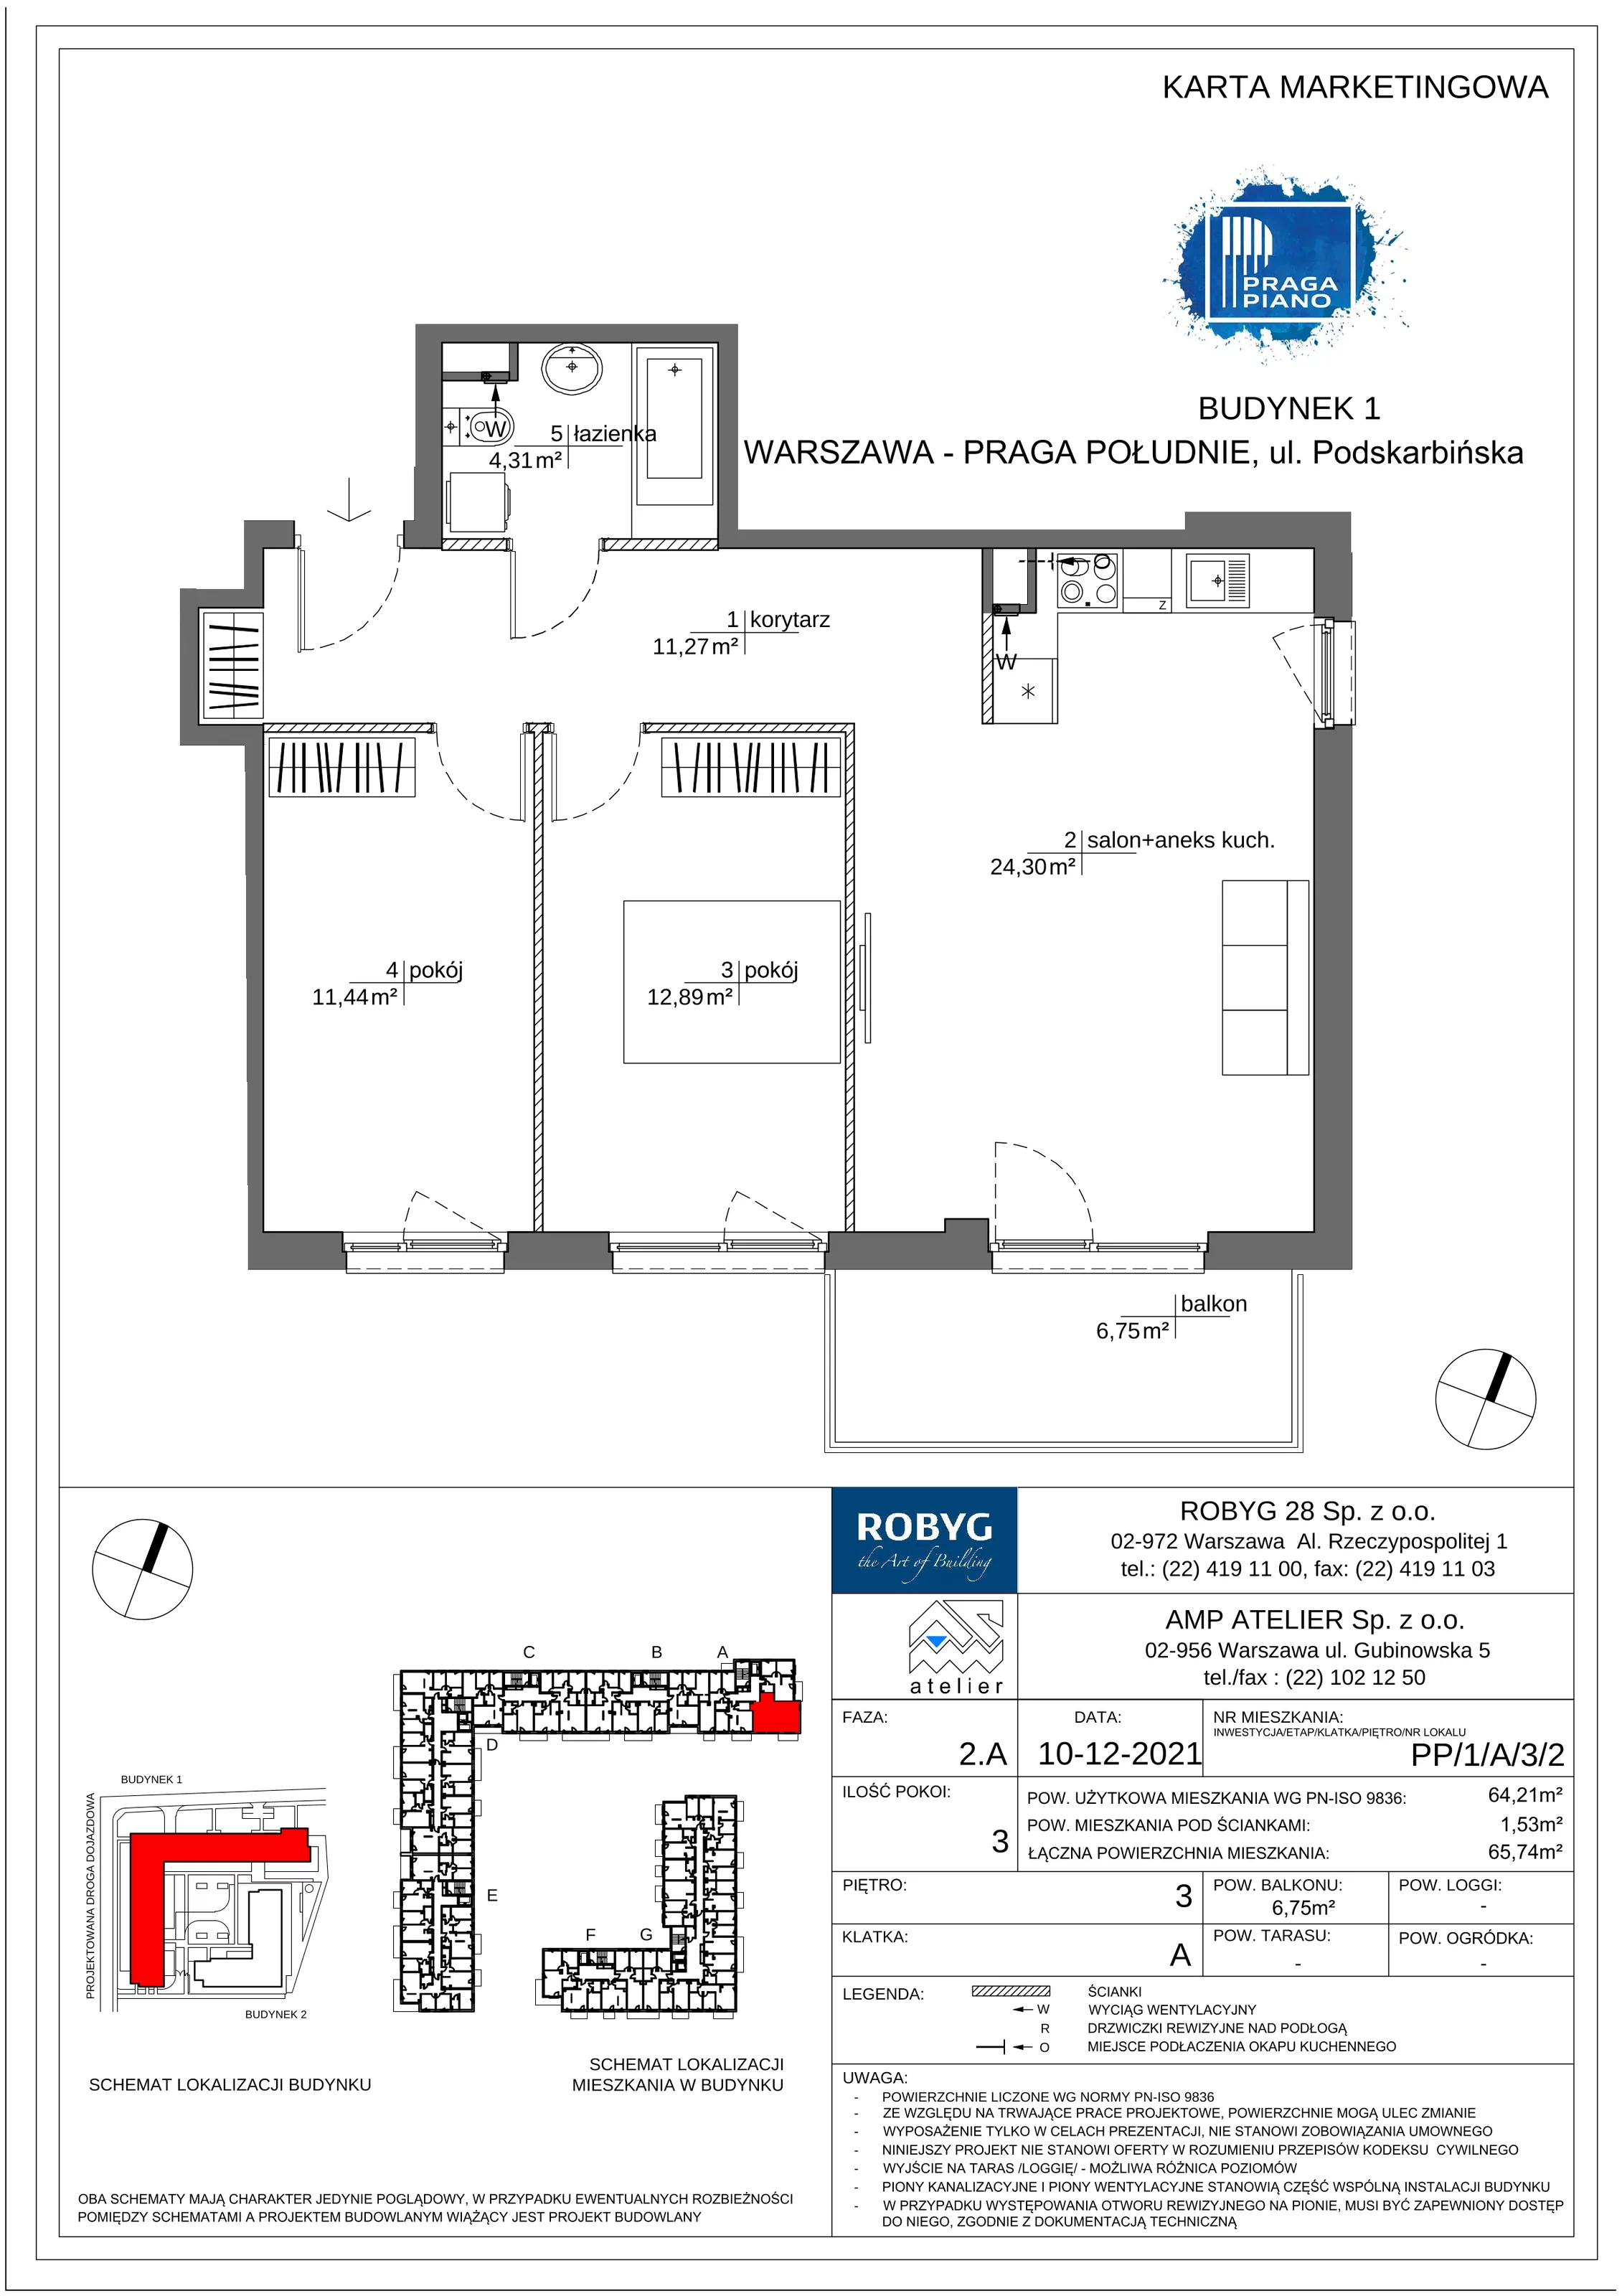 Mieszkanie 64,21 m², piętro 3, oferta nr PP/1/A/3/2, Praga Piano, Warszawa, Praga Południe, Kamionek, ul. Podskarbińska